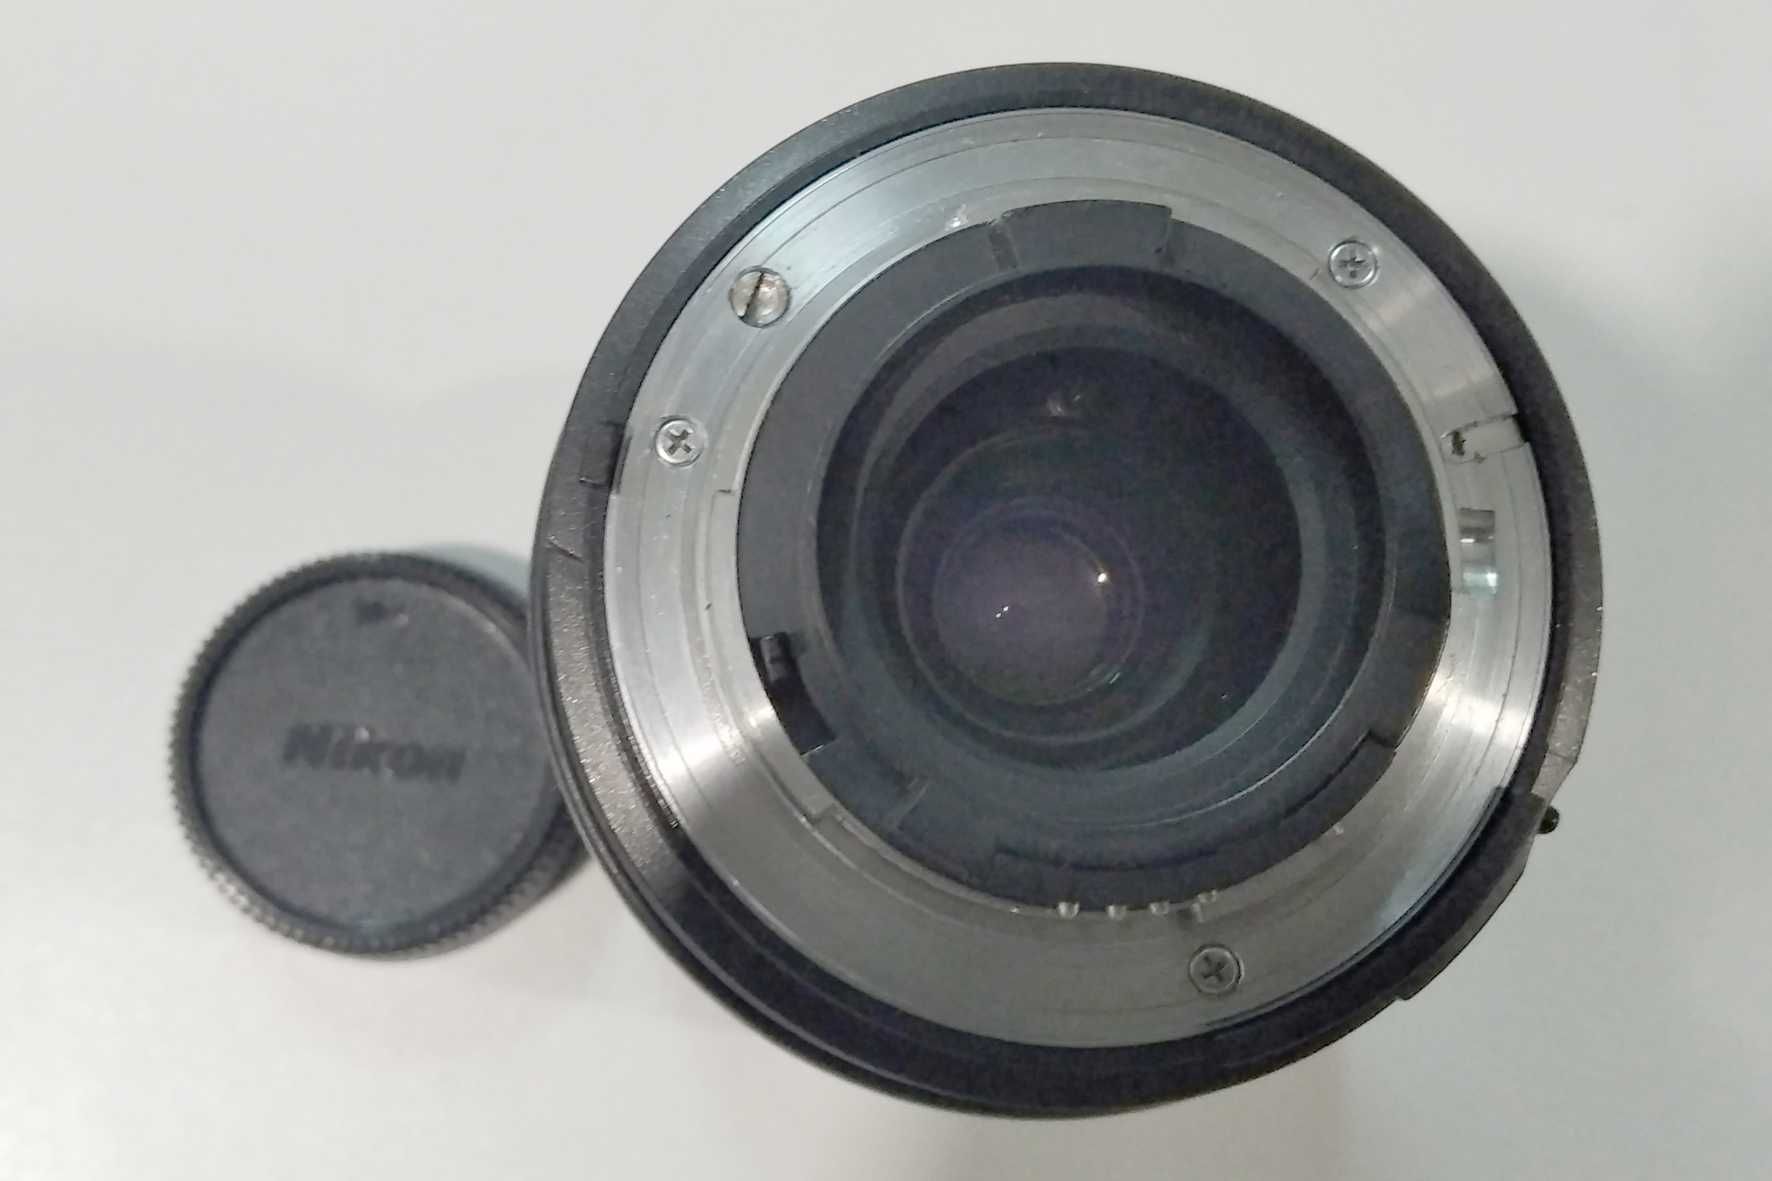 Objectiva 28-105 Tamron para Nikon